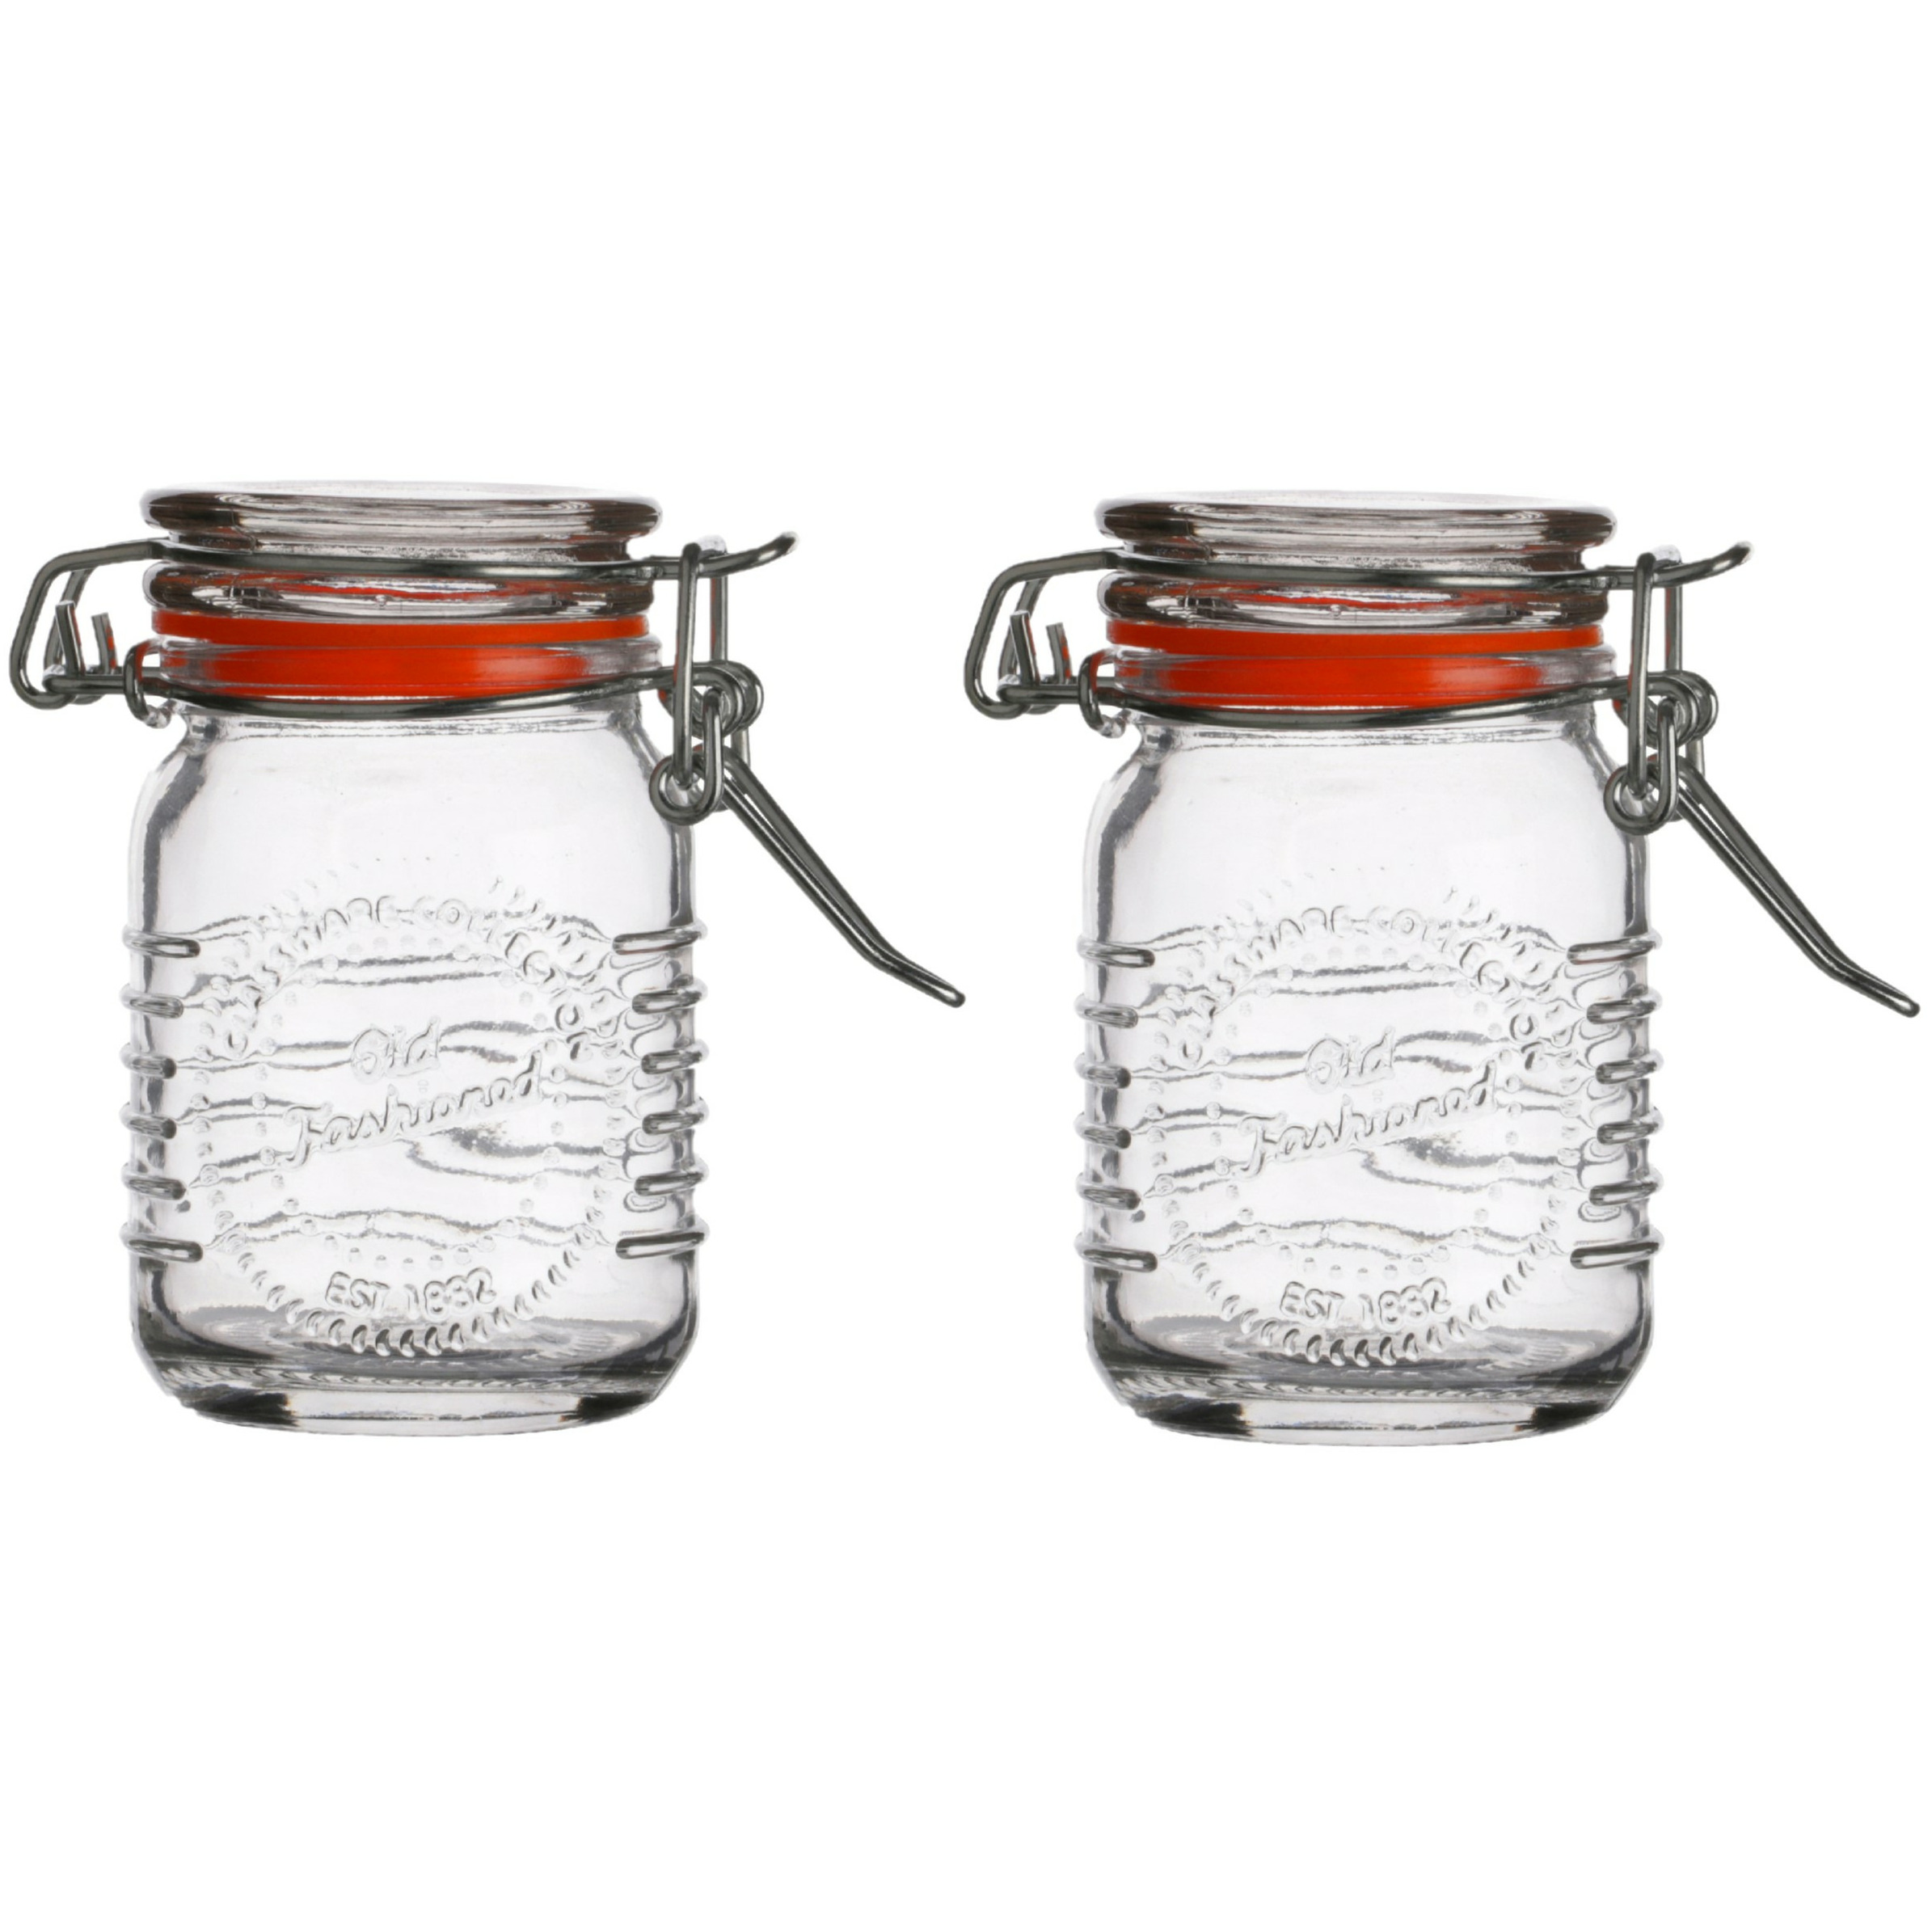 Voorraadpotje-kruidenpotje 2x mini 70 ml glas met beugelsluiting D5 x H8 cm